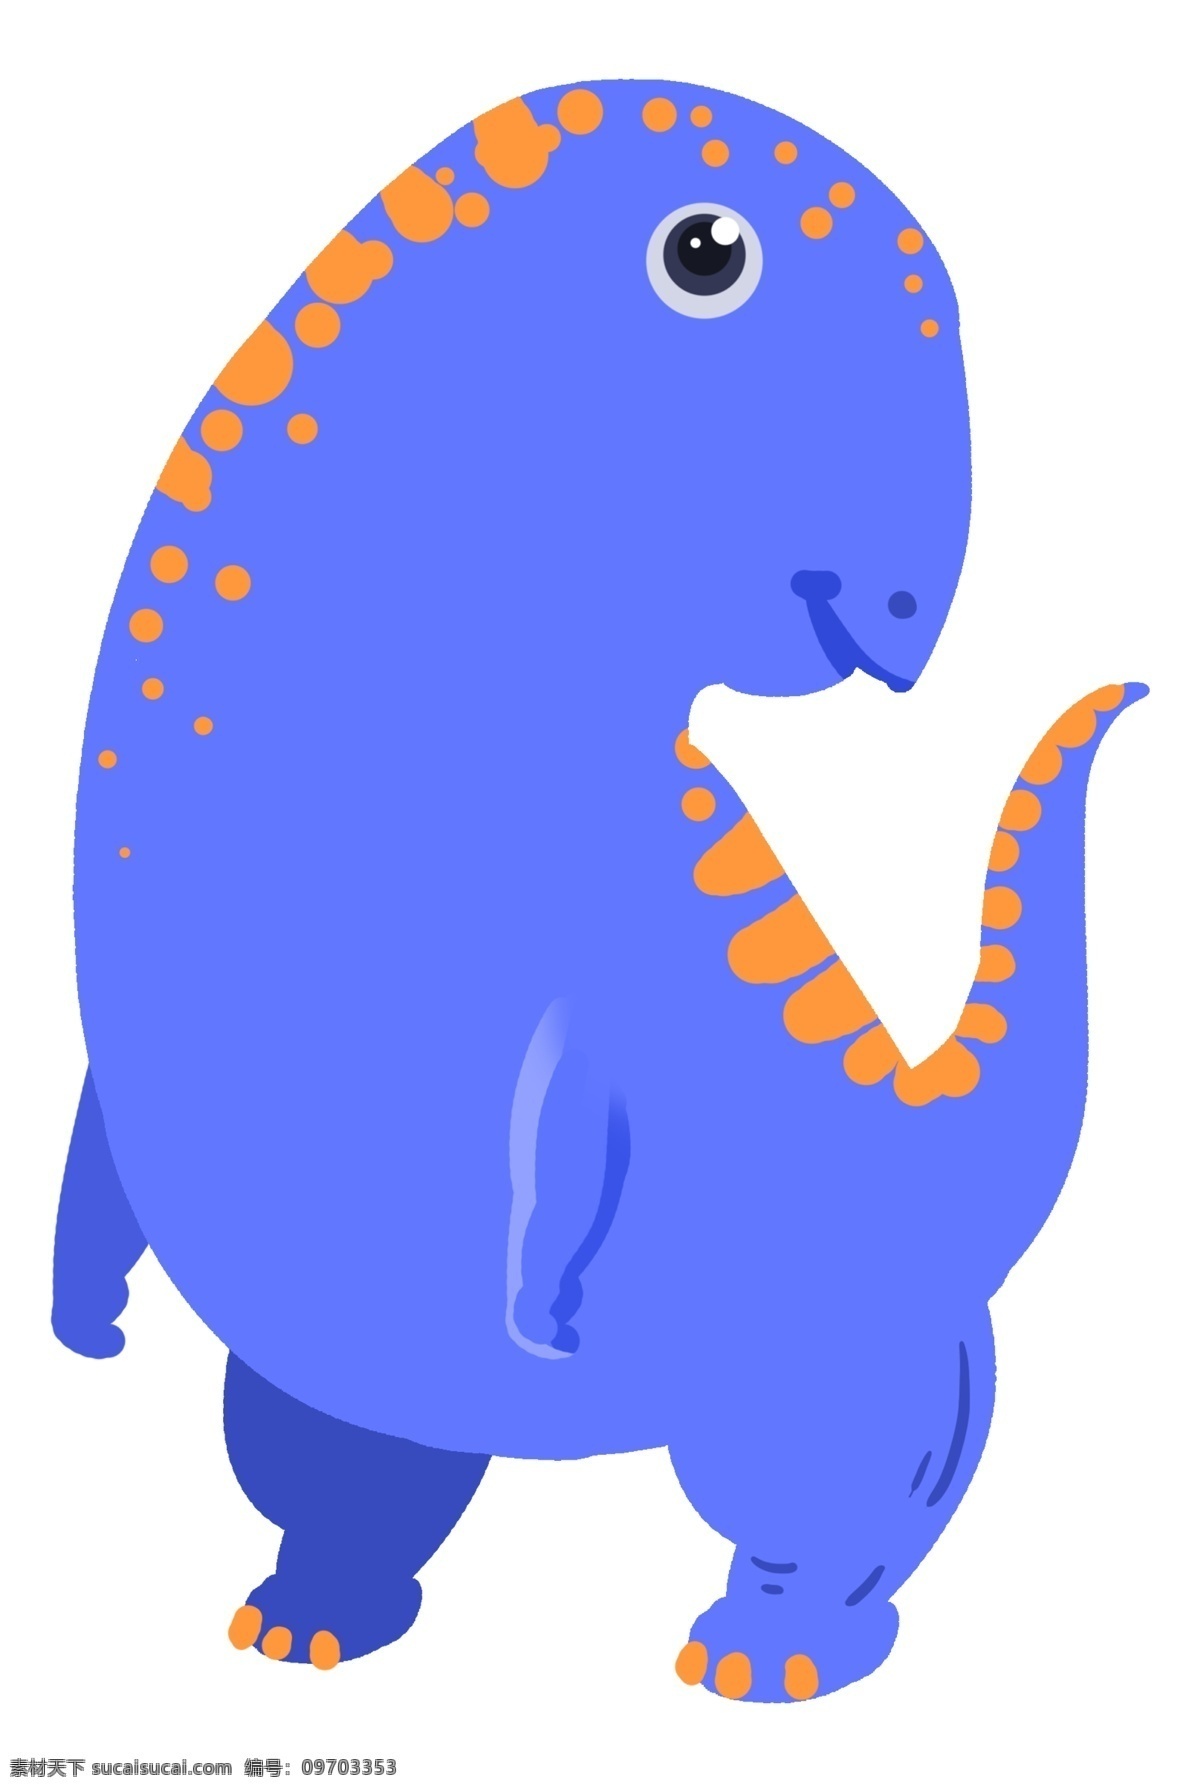 厉害 可爱 恐龙 插画 厉害的恐龙 卡通插画 可爱恐龙 动物插画 恐龙插画 稀有动物 美丽的恐龙